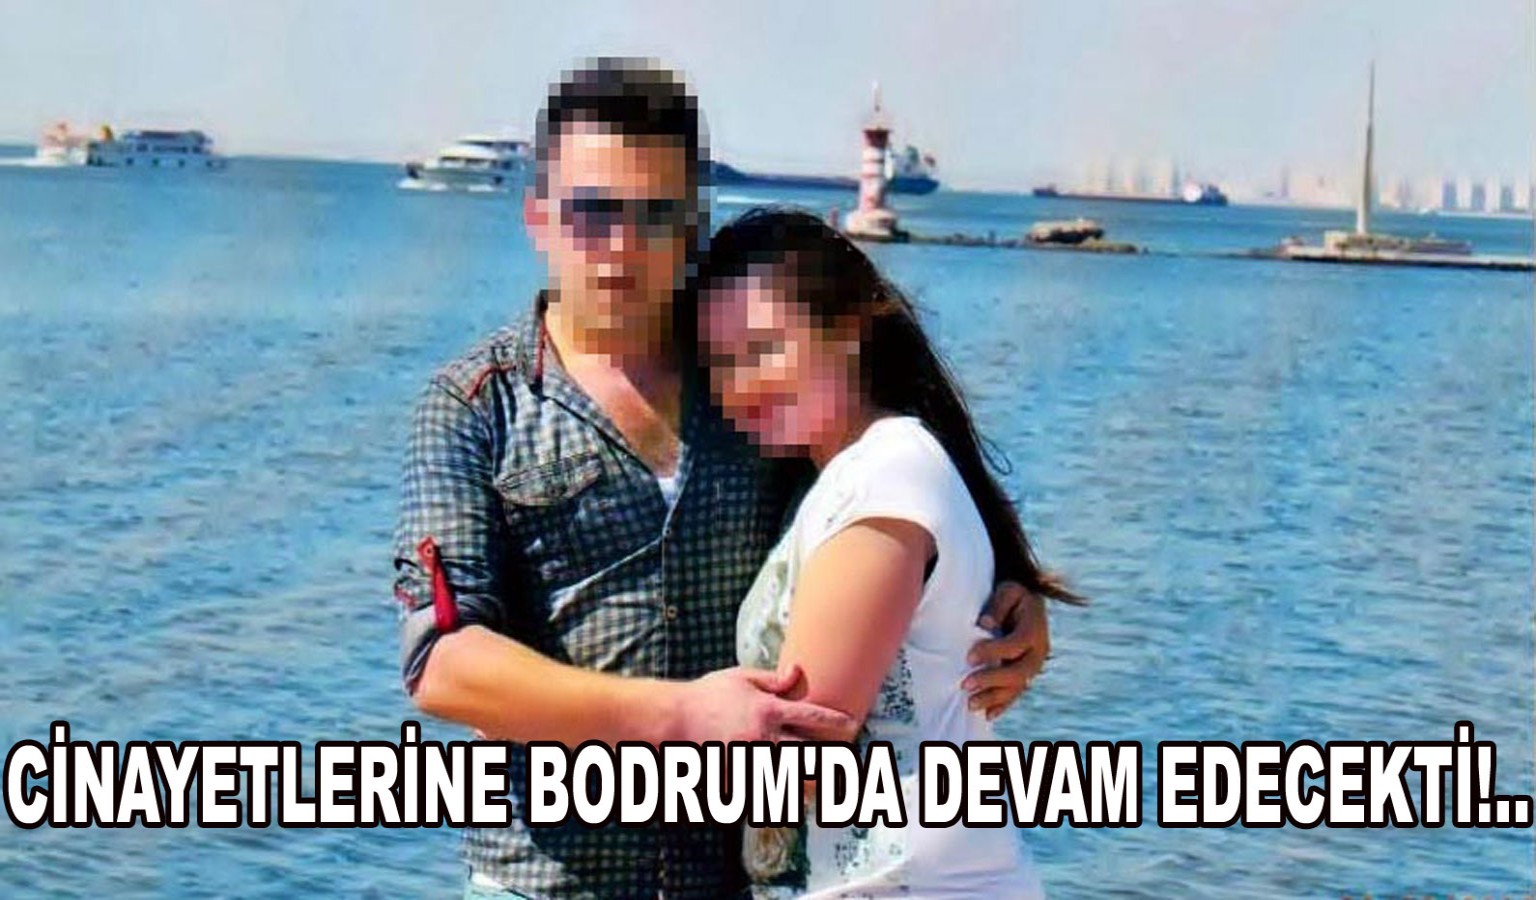 CİNAYETLERİNE BODRUM'DA DEVAM EDECEKTİ!..